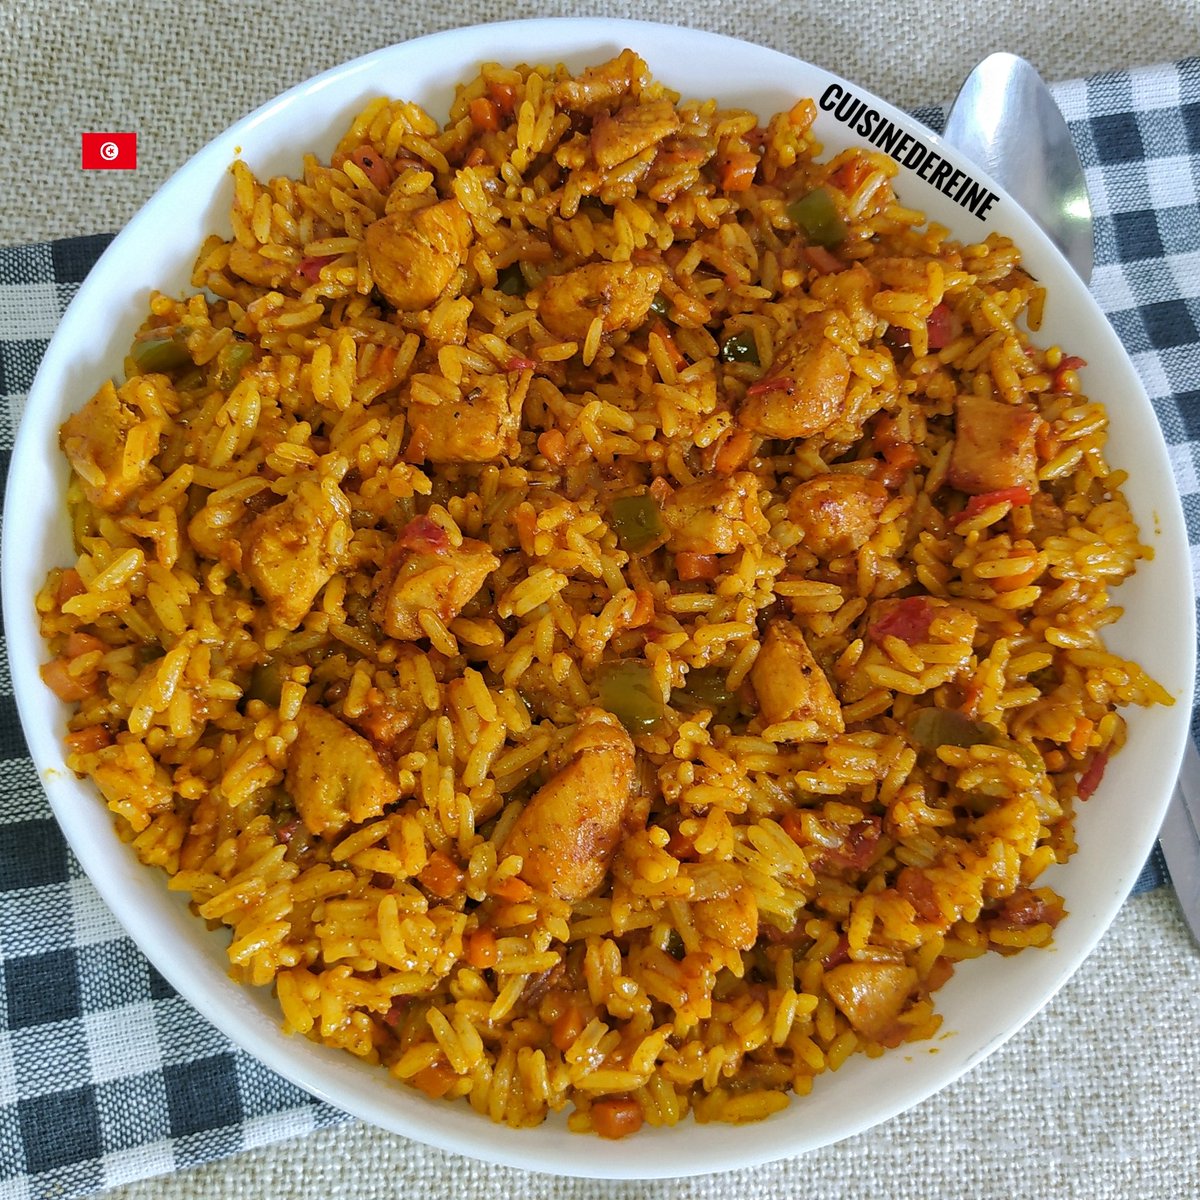 أرز سهل التحضير طريقة التحضير بالفيديو مع تعويض اللحم بالدجاج: youtu.be/Xyu41d1VUOE?si… #Food #Rice #Recipe #Tunisia